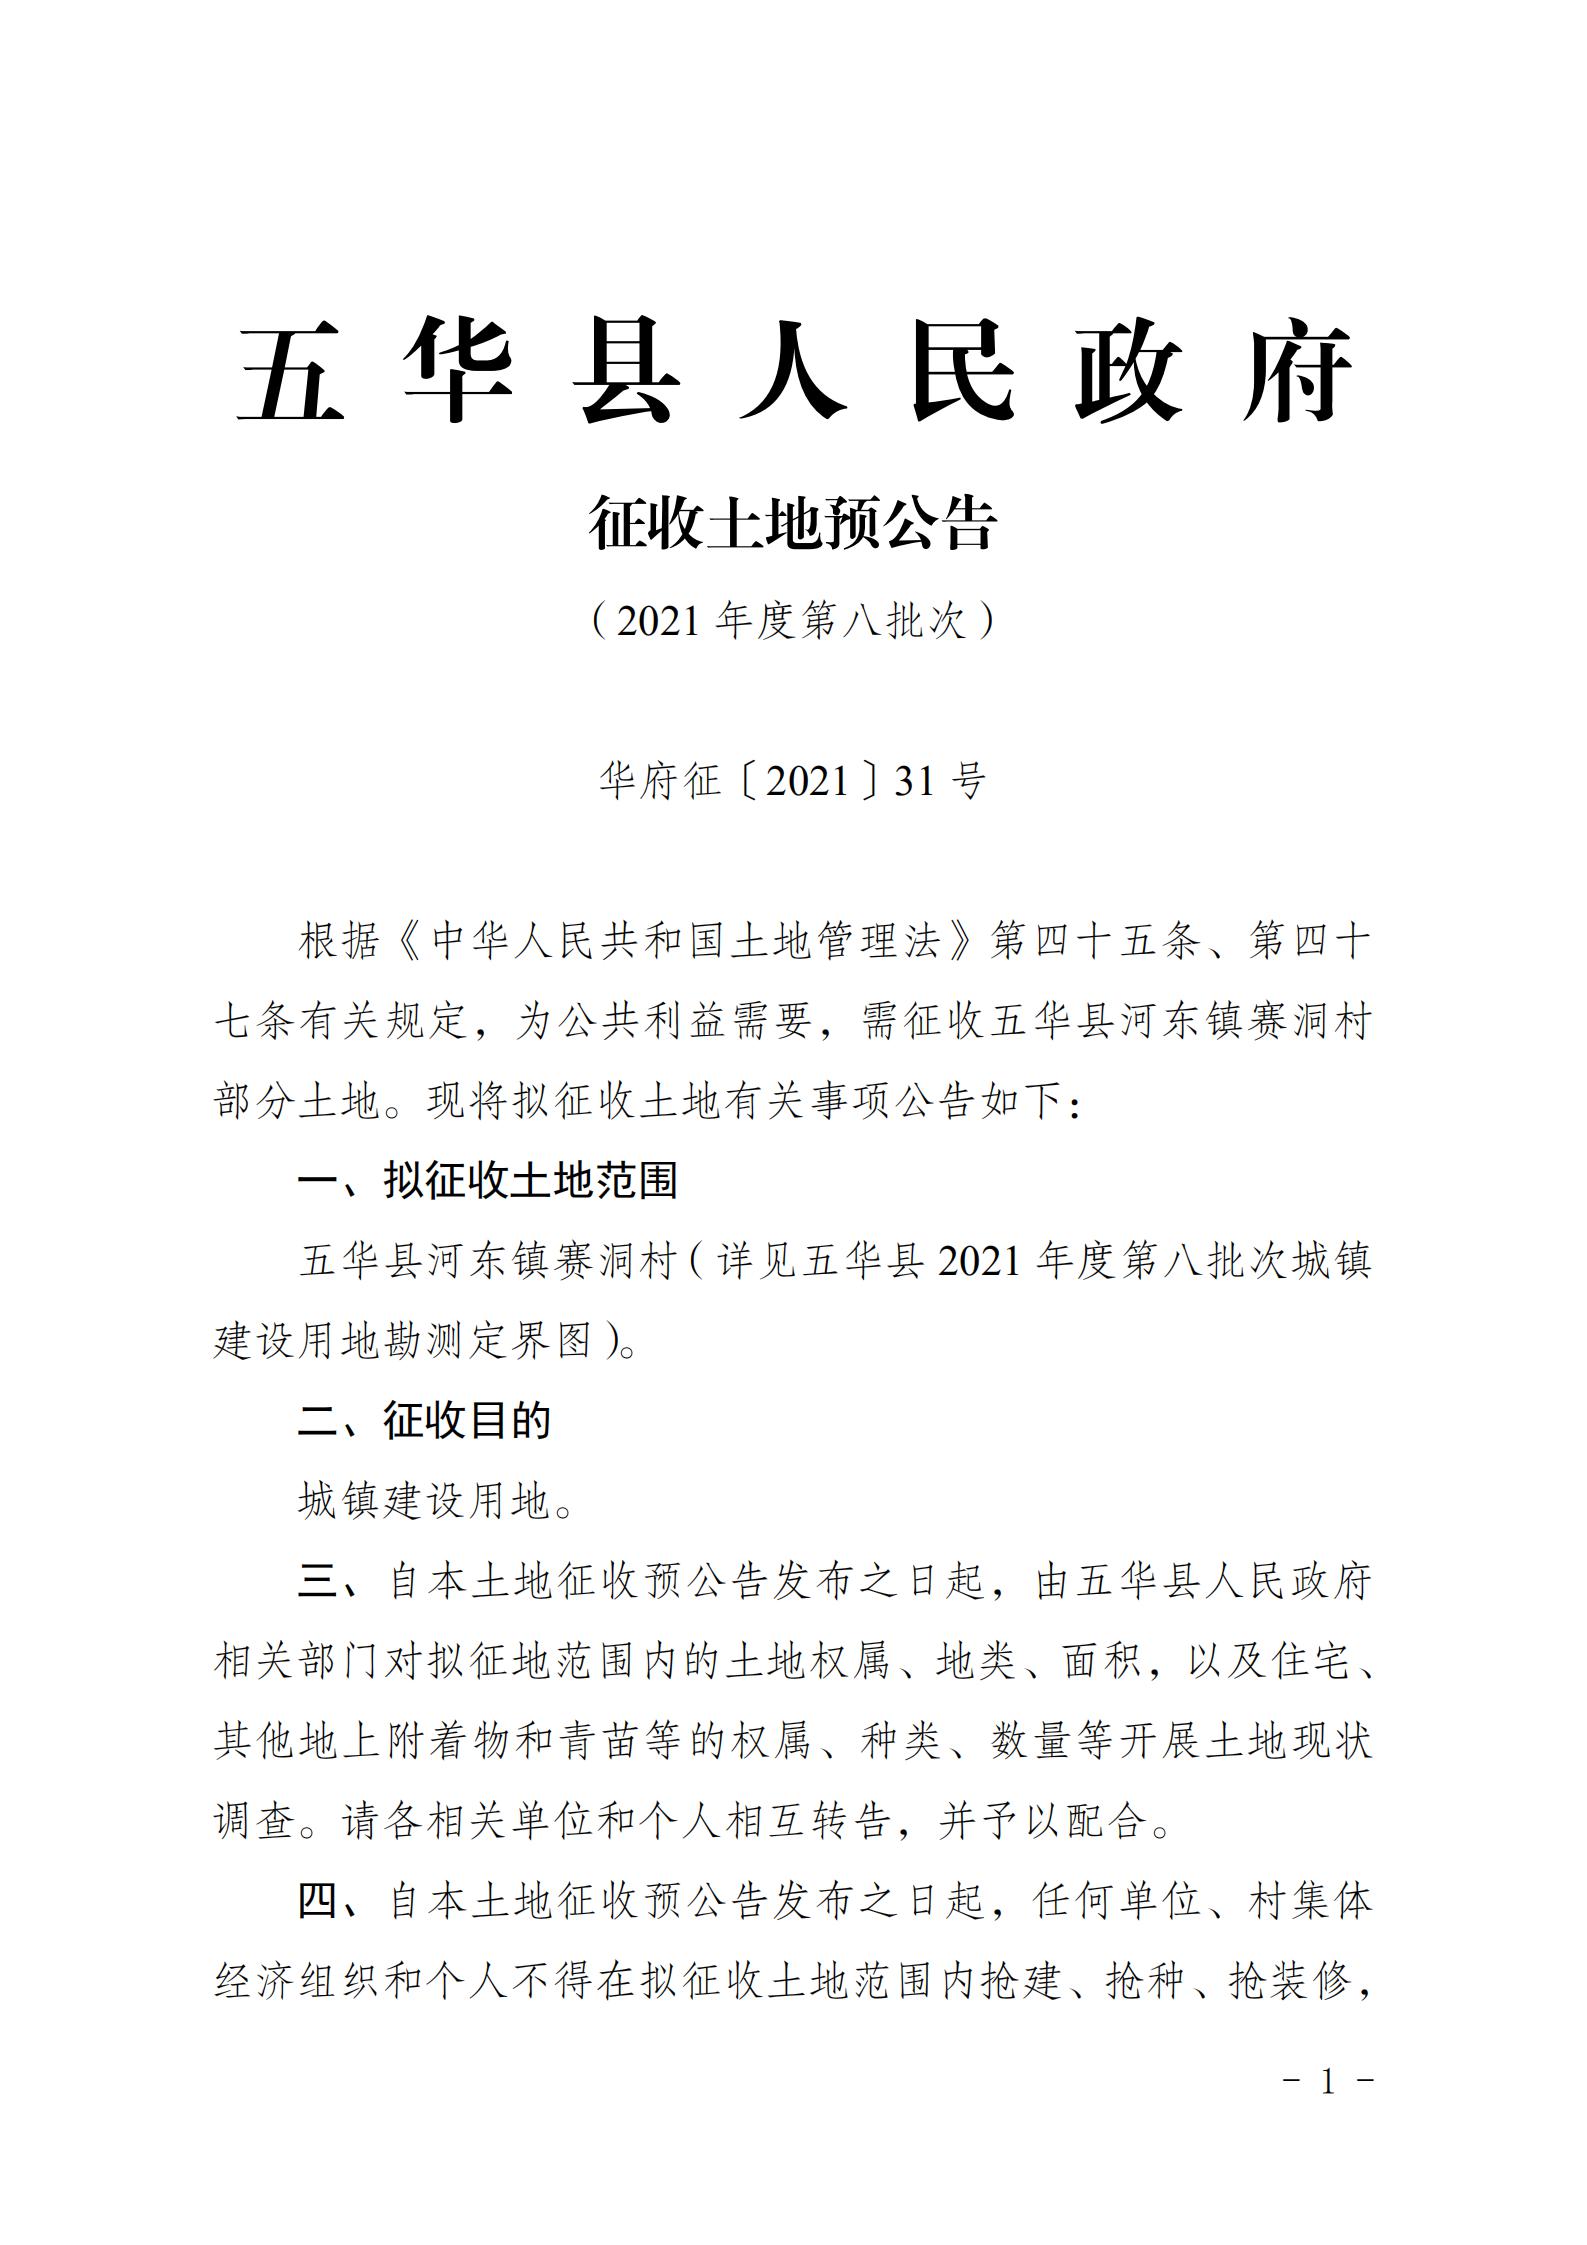 31号五华县人民政府征收土地预公告（2021年第八批次）_00.jpg